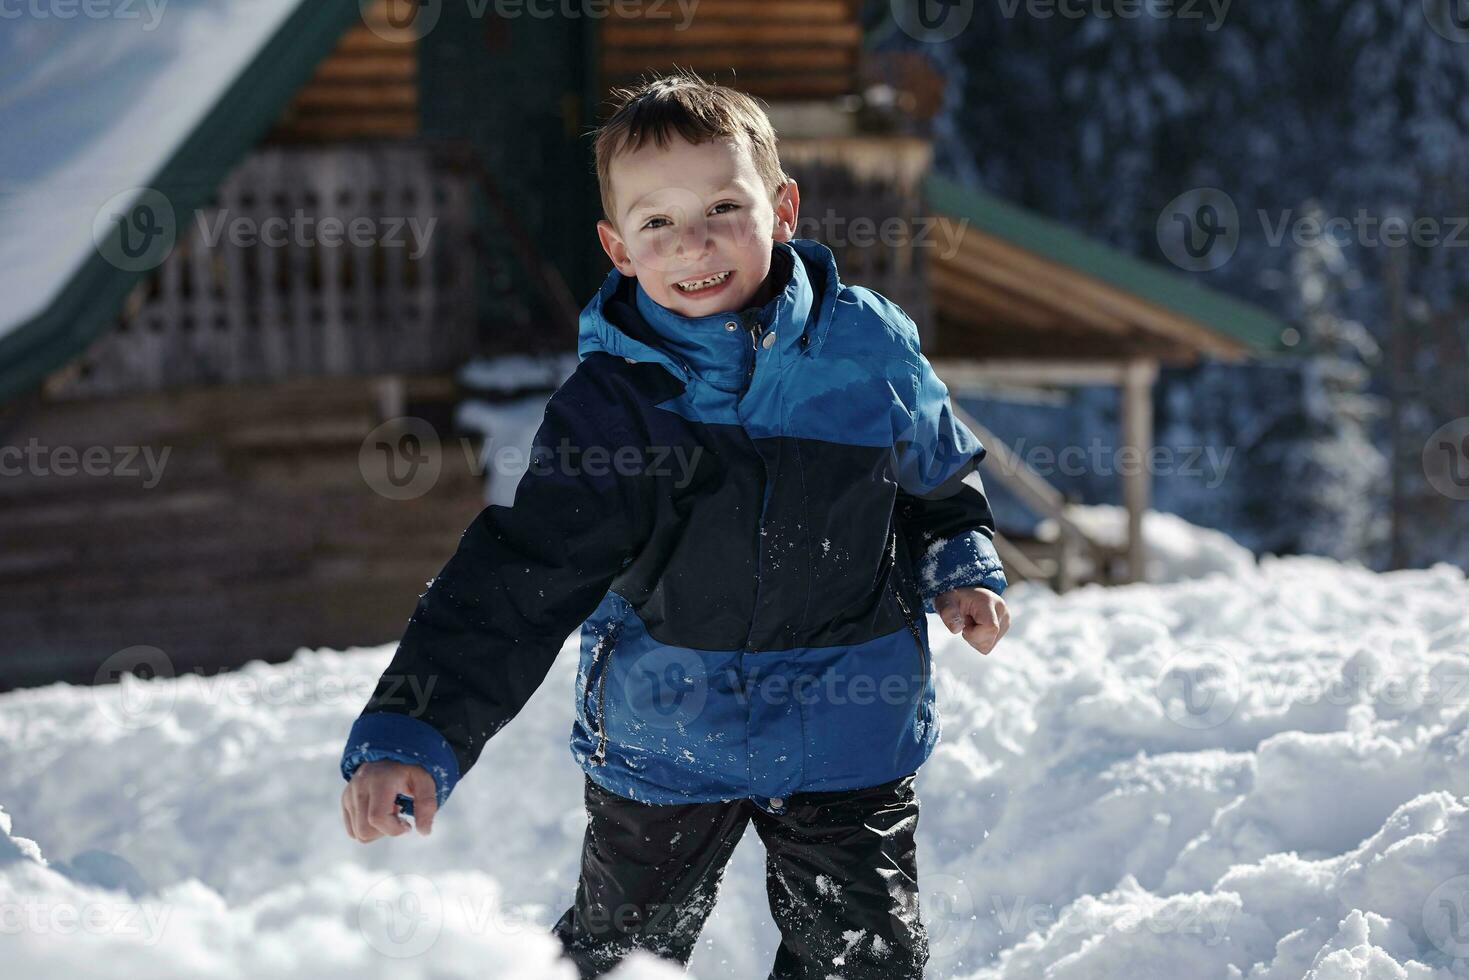 niños jugando con nieve fresca foto